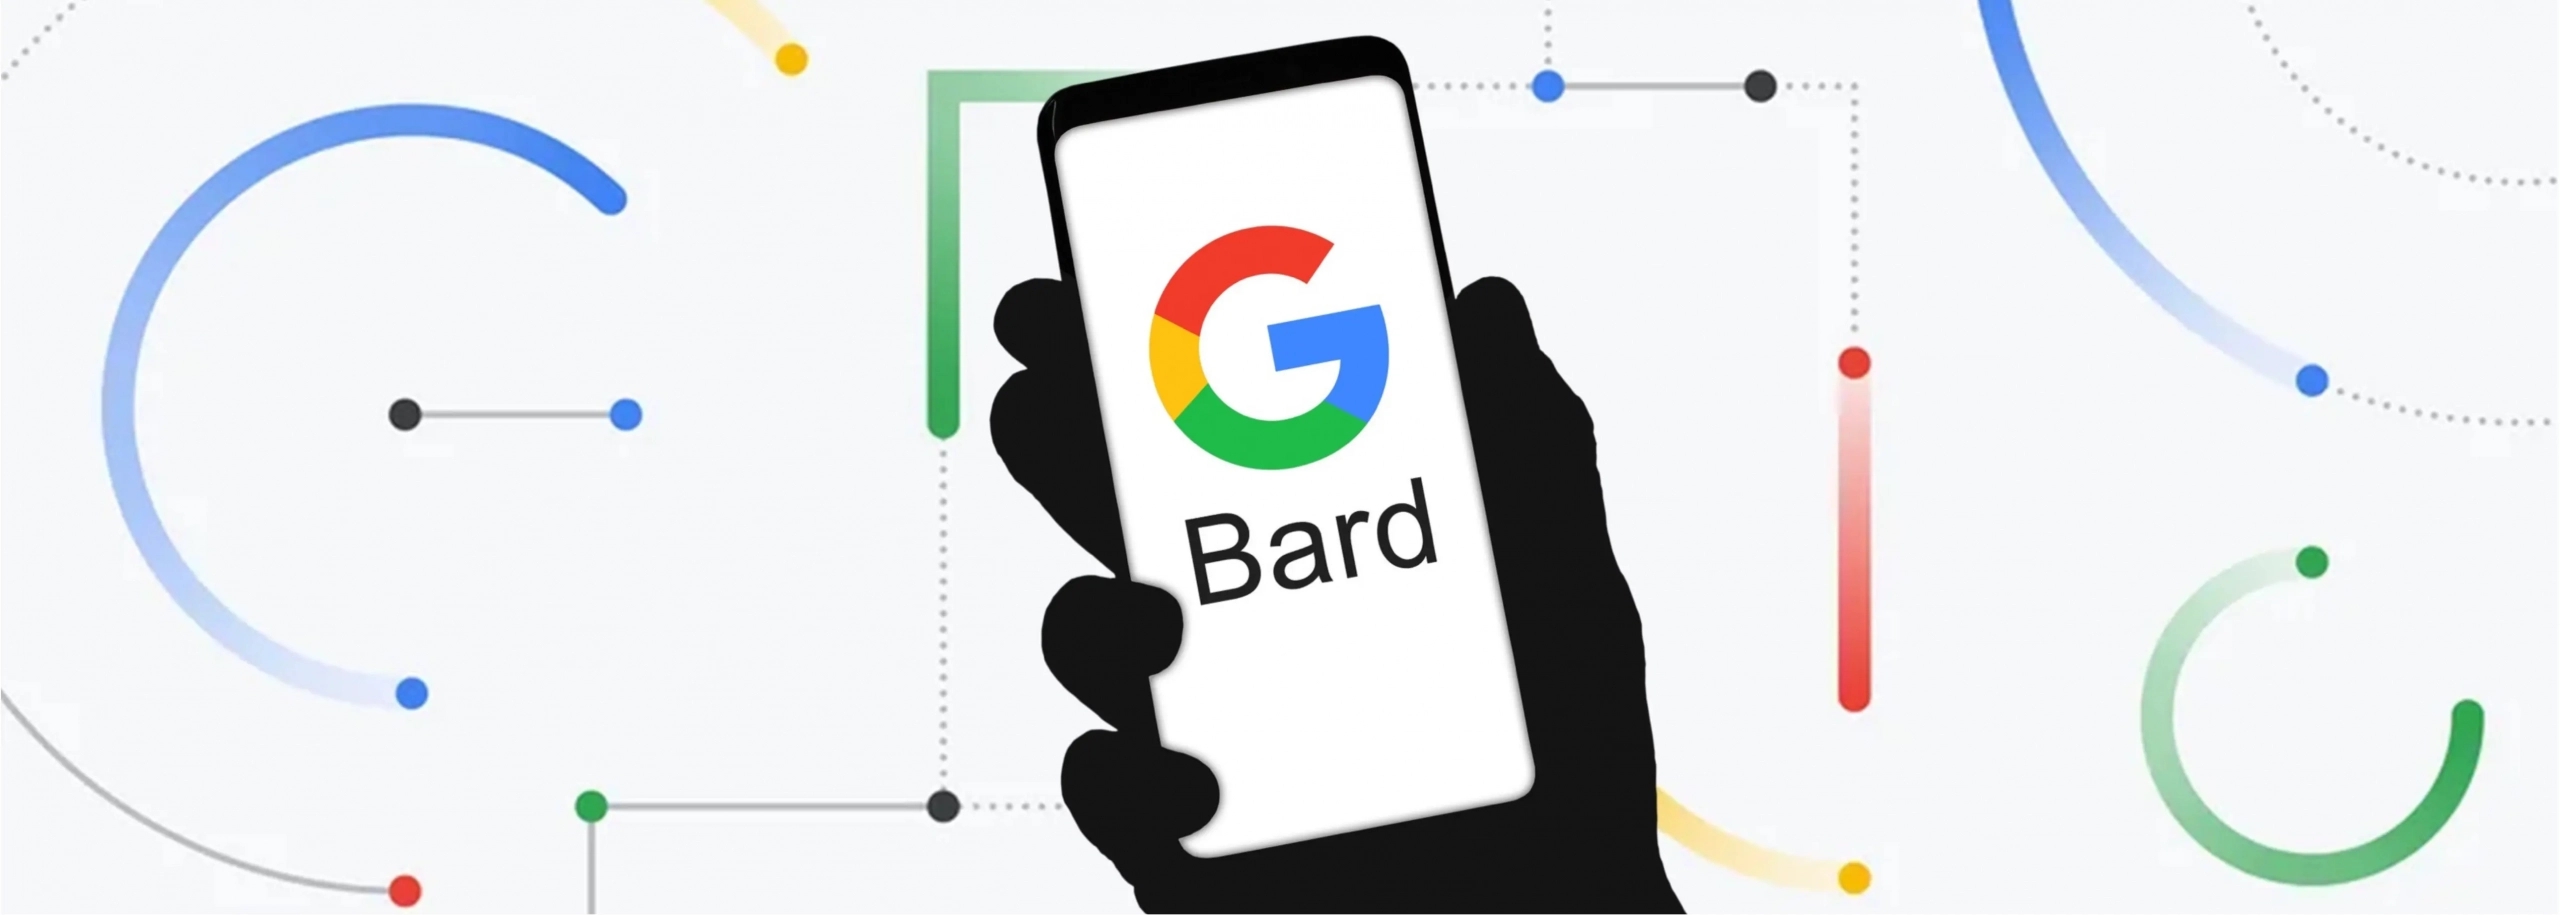 谷歌CEO支内部疑 齐员匡助测试Bard AI讲天呆板人